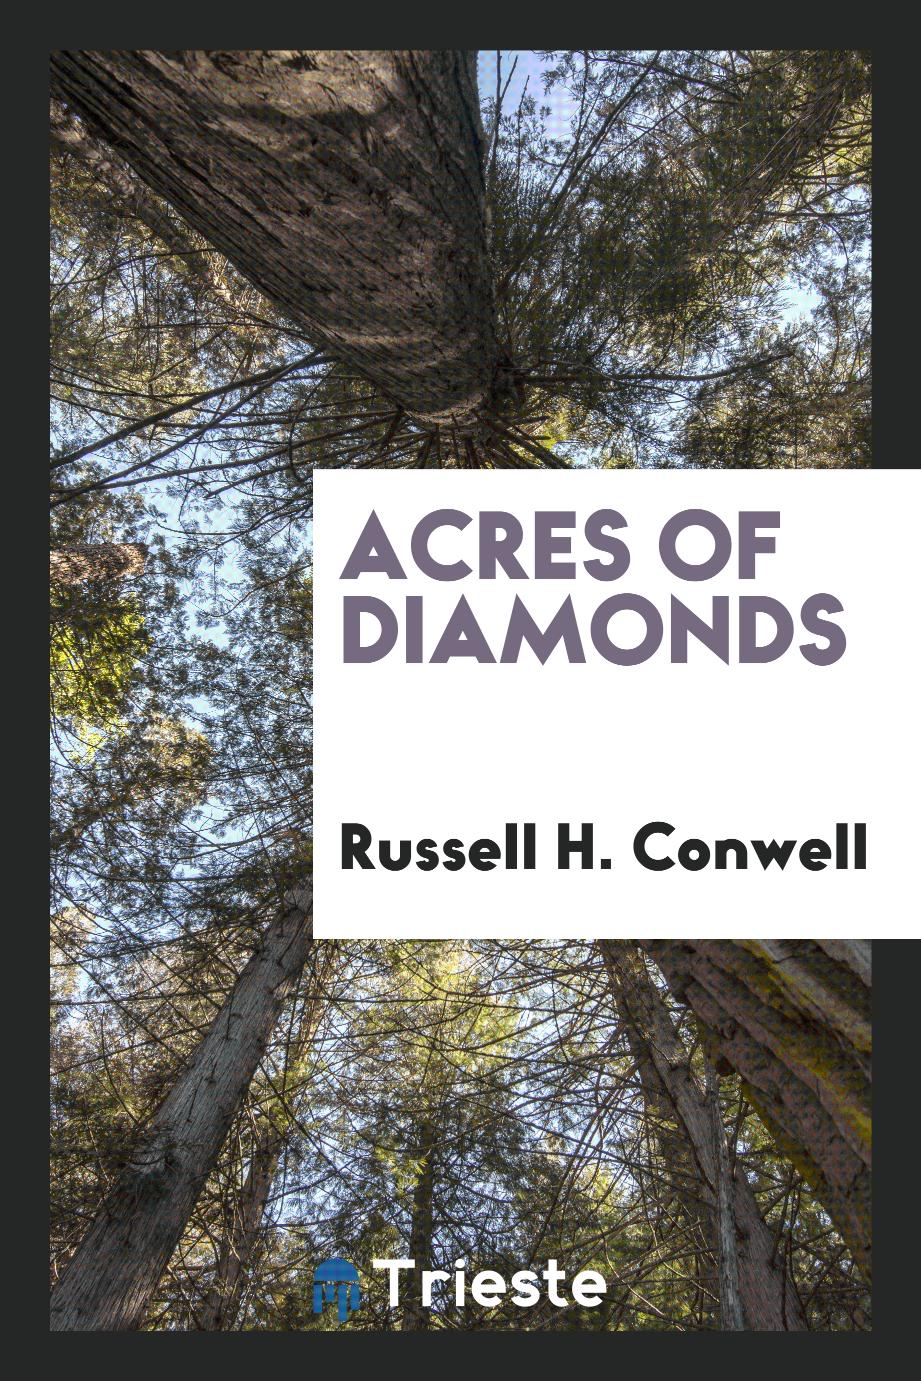 Acres of diamonds